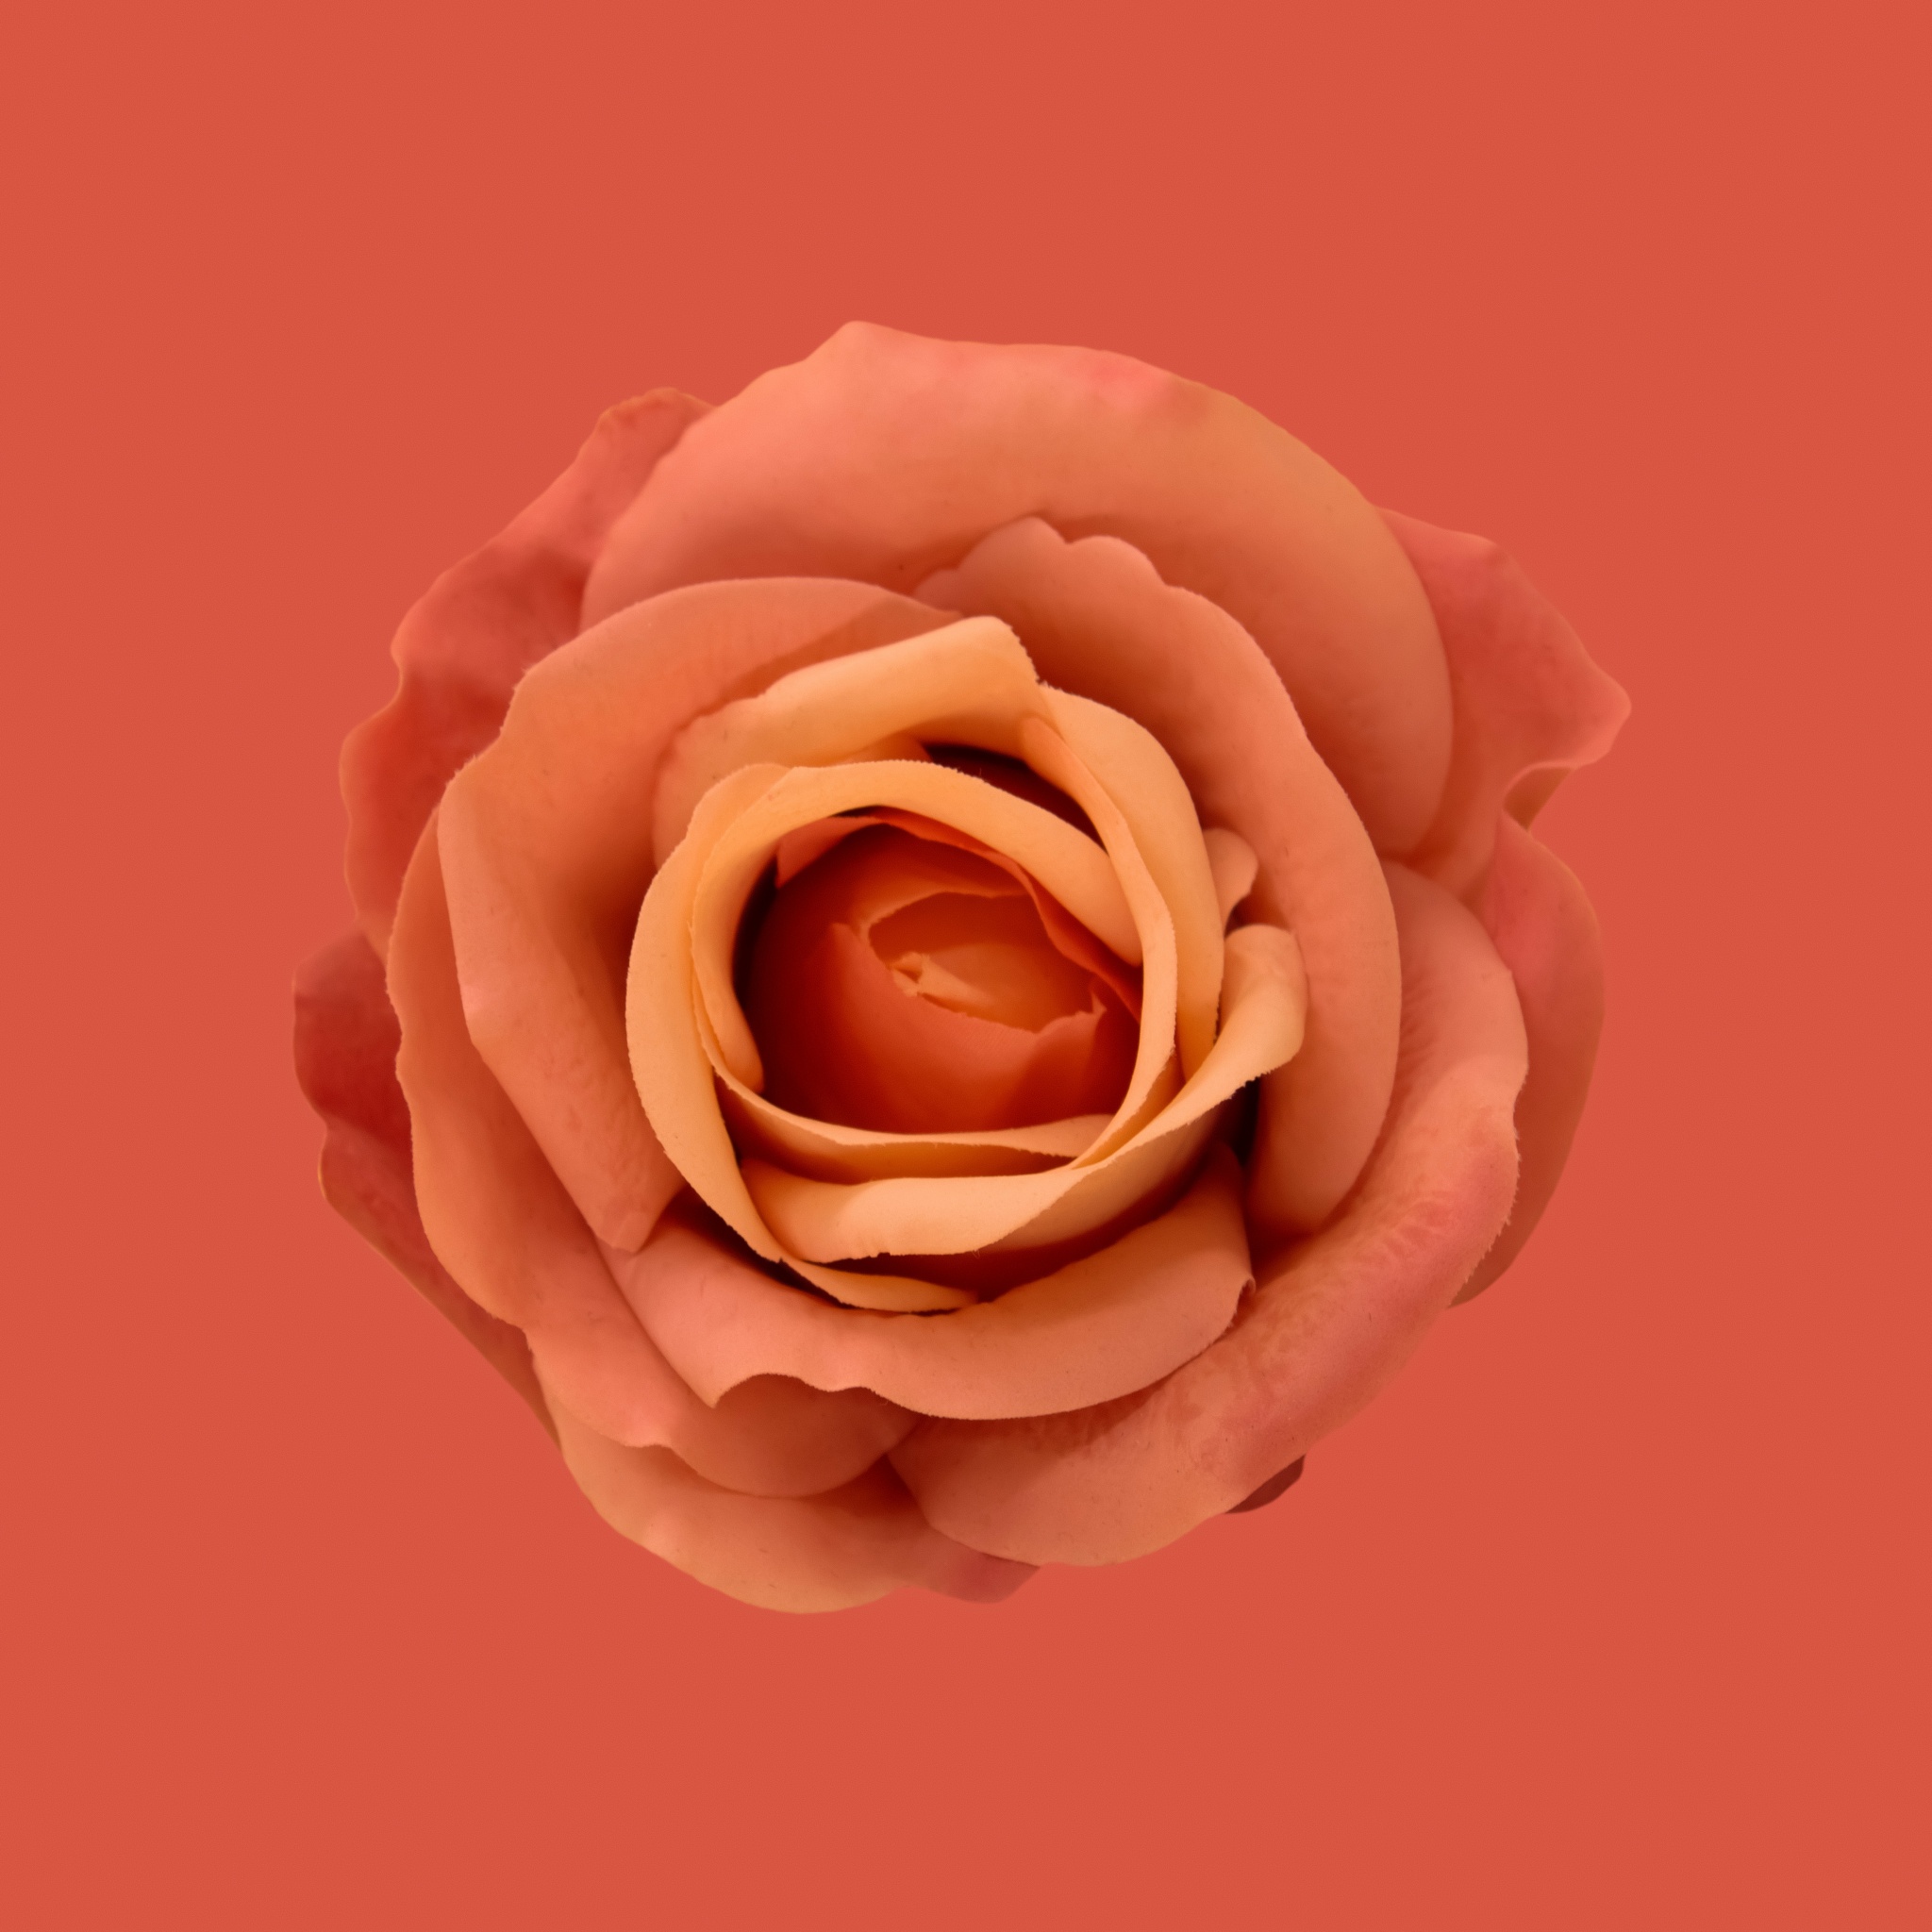 Orange Rose Wallpaper là lựa chọn hoàn hảo cho những tâm hồn đang tìm kiếm sự dịu dàng và tinh tế. Với đường nét hoa hồng tươi sáng, kết hợp với màu cam đầy sức sống, bức hình sẽ giúp bạn thư giãn với không gian ấm áp và thuần khiết.